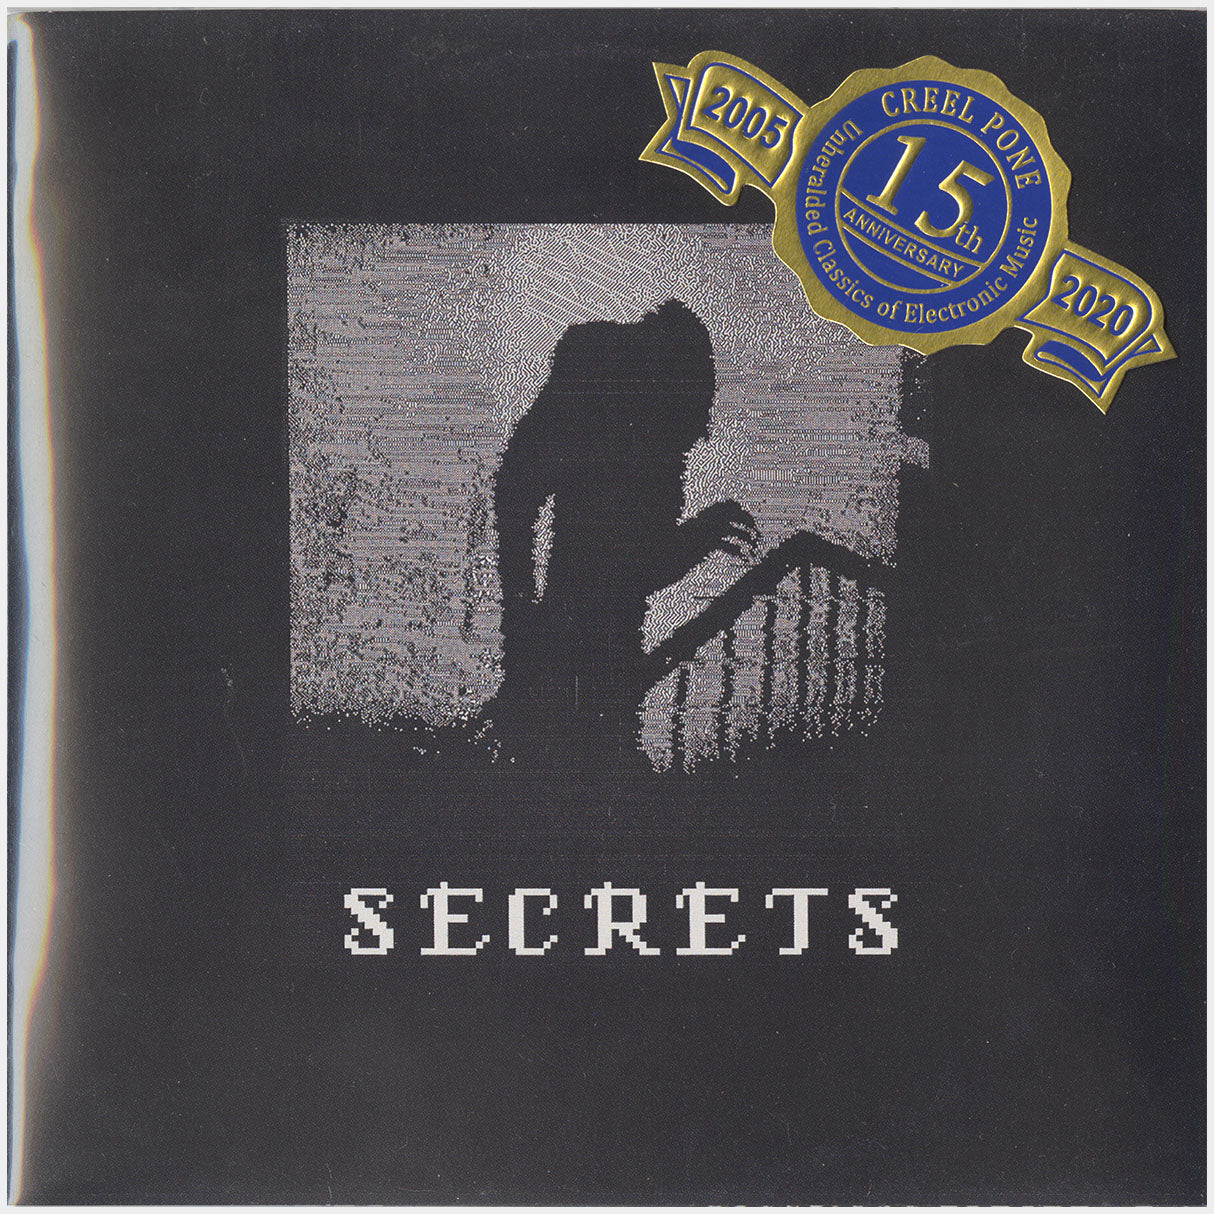 [CP 199.12 CD] Alexandre Kush, Bernard Lamastre; Secrets, Quiet Times